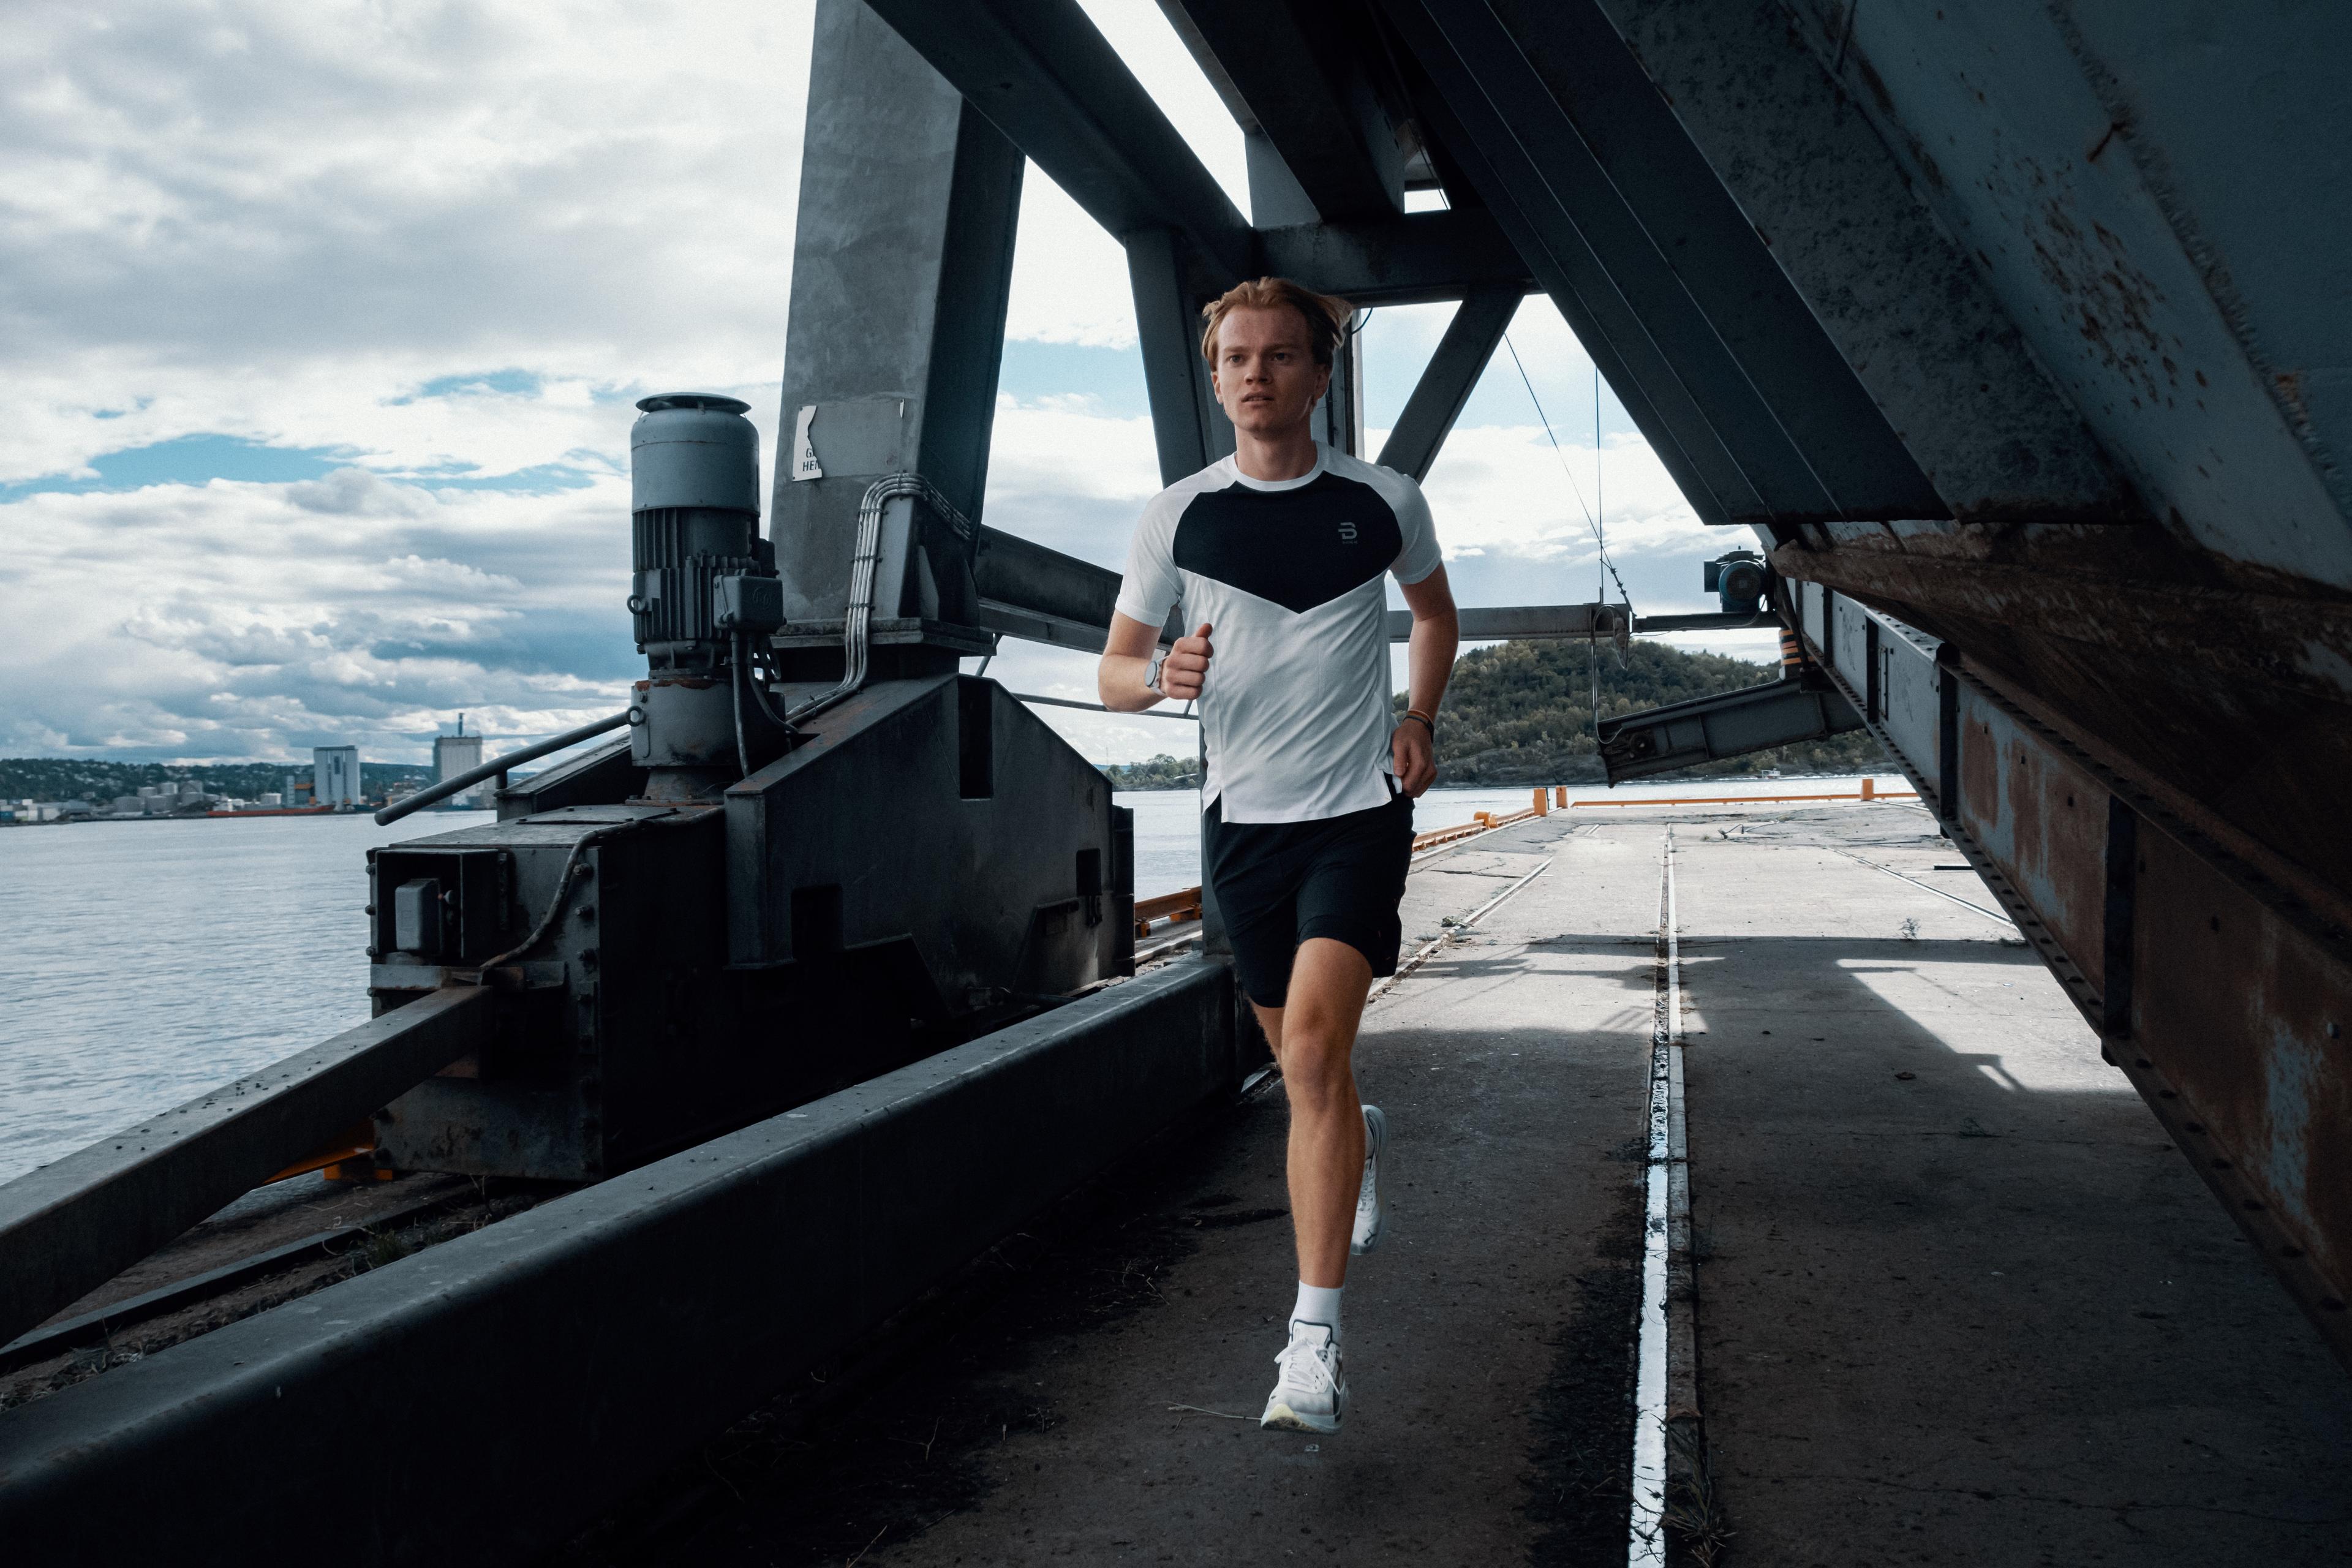 Mann løper utendørs i treningsklær